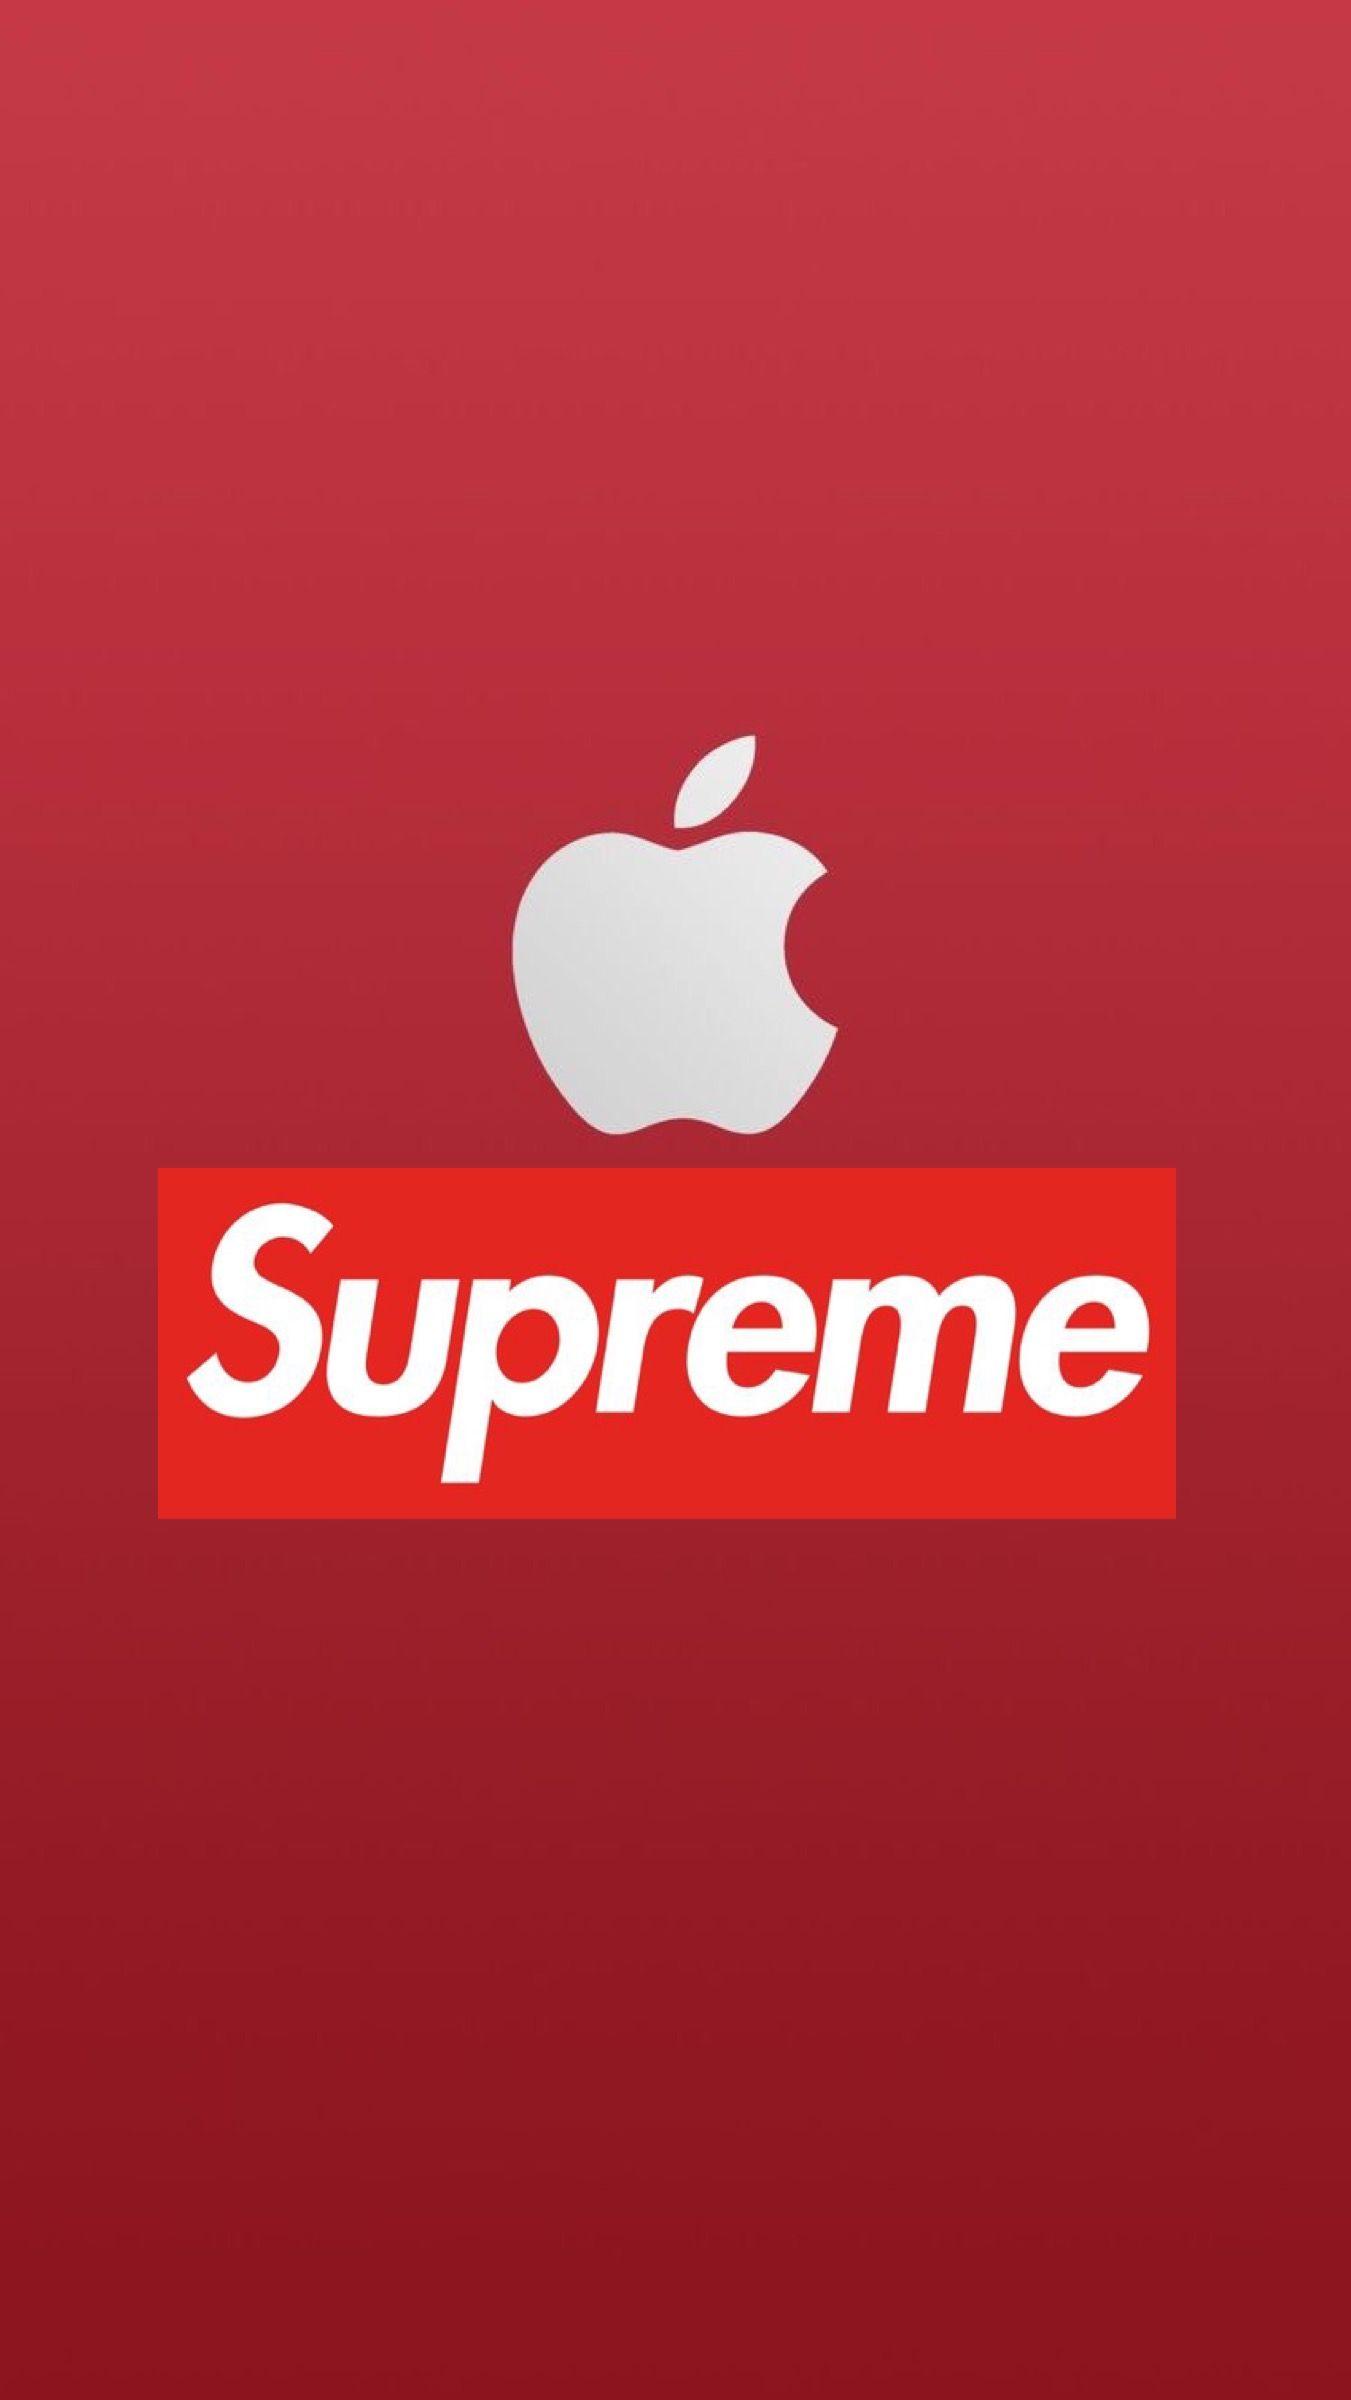 Supreme Apple Logo - Pin on Dope art